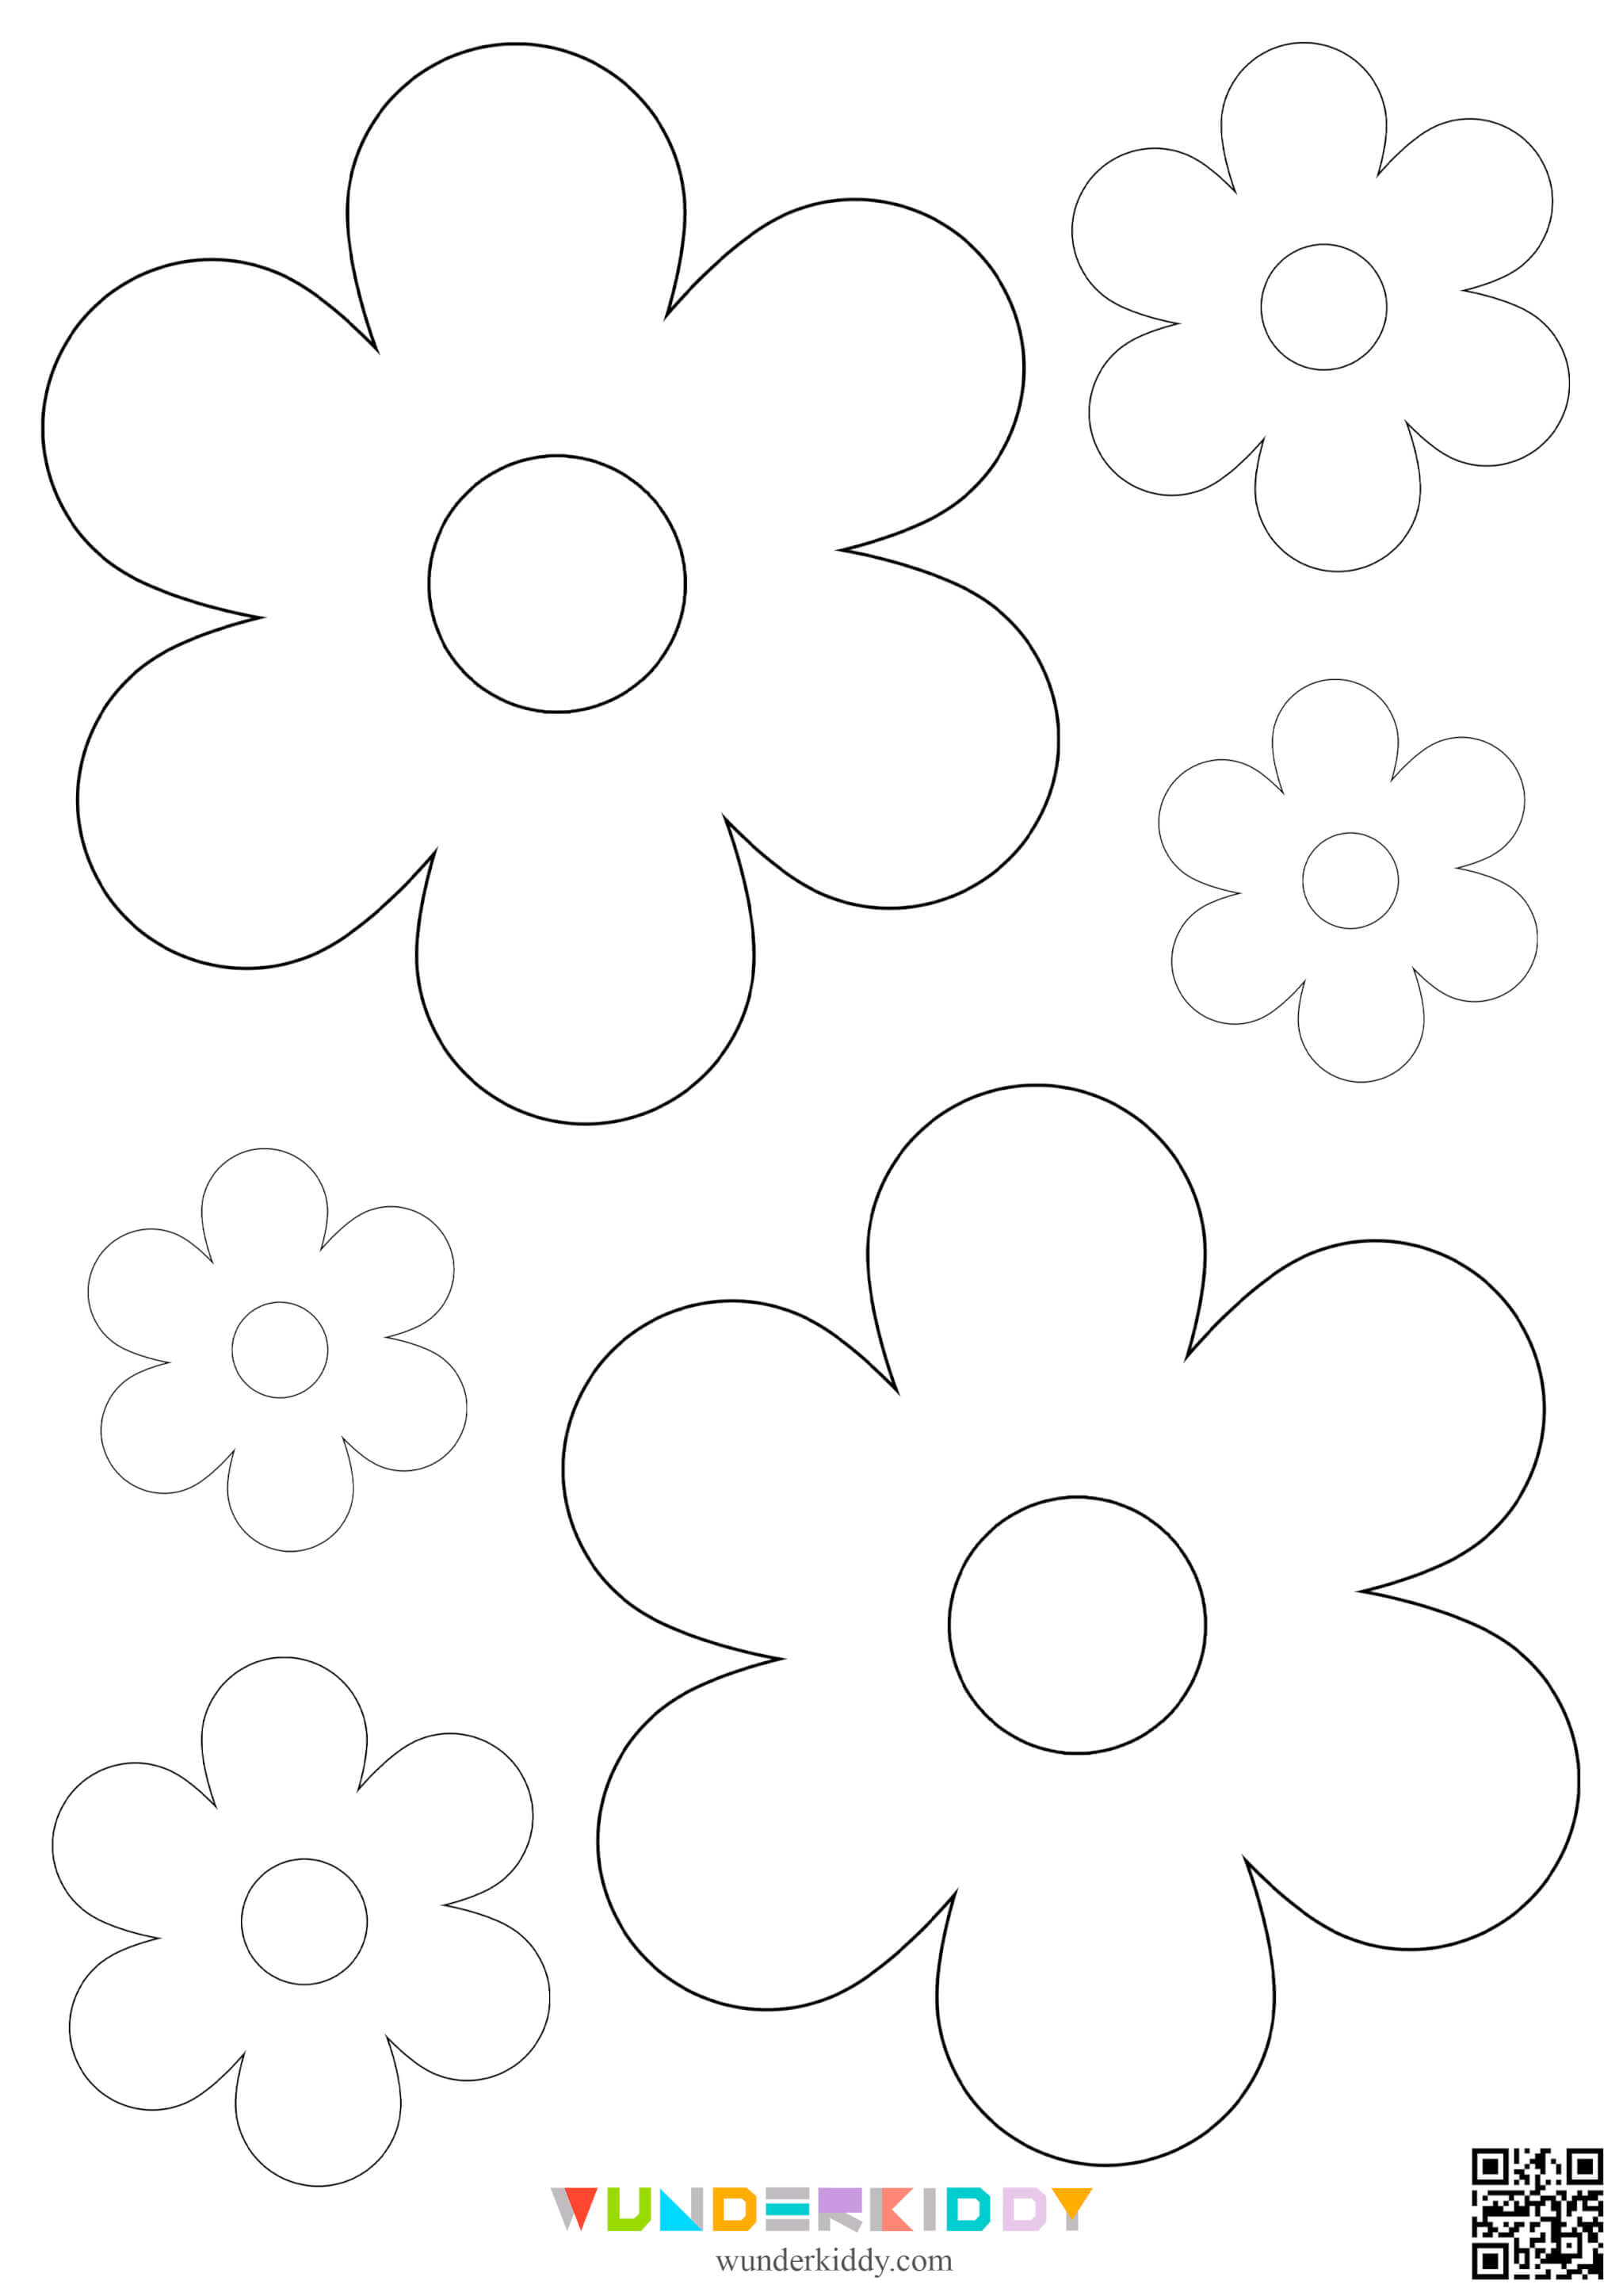 Шаблоны цветов для вырезания и апплицаций - Изображение 5